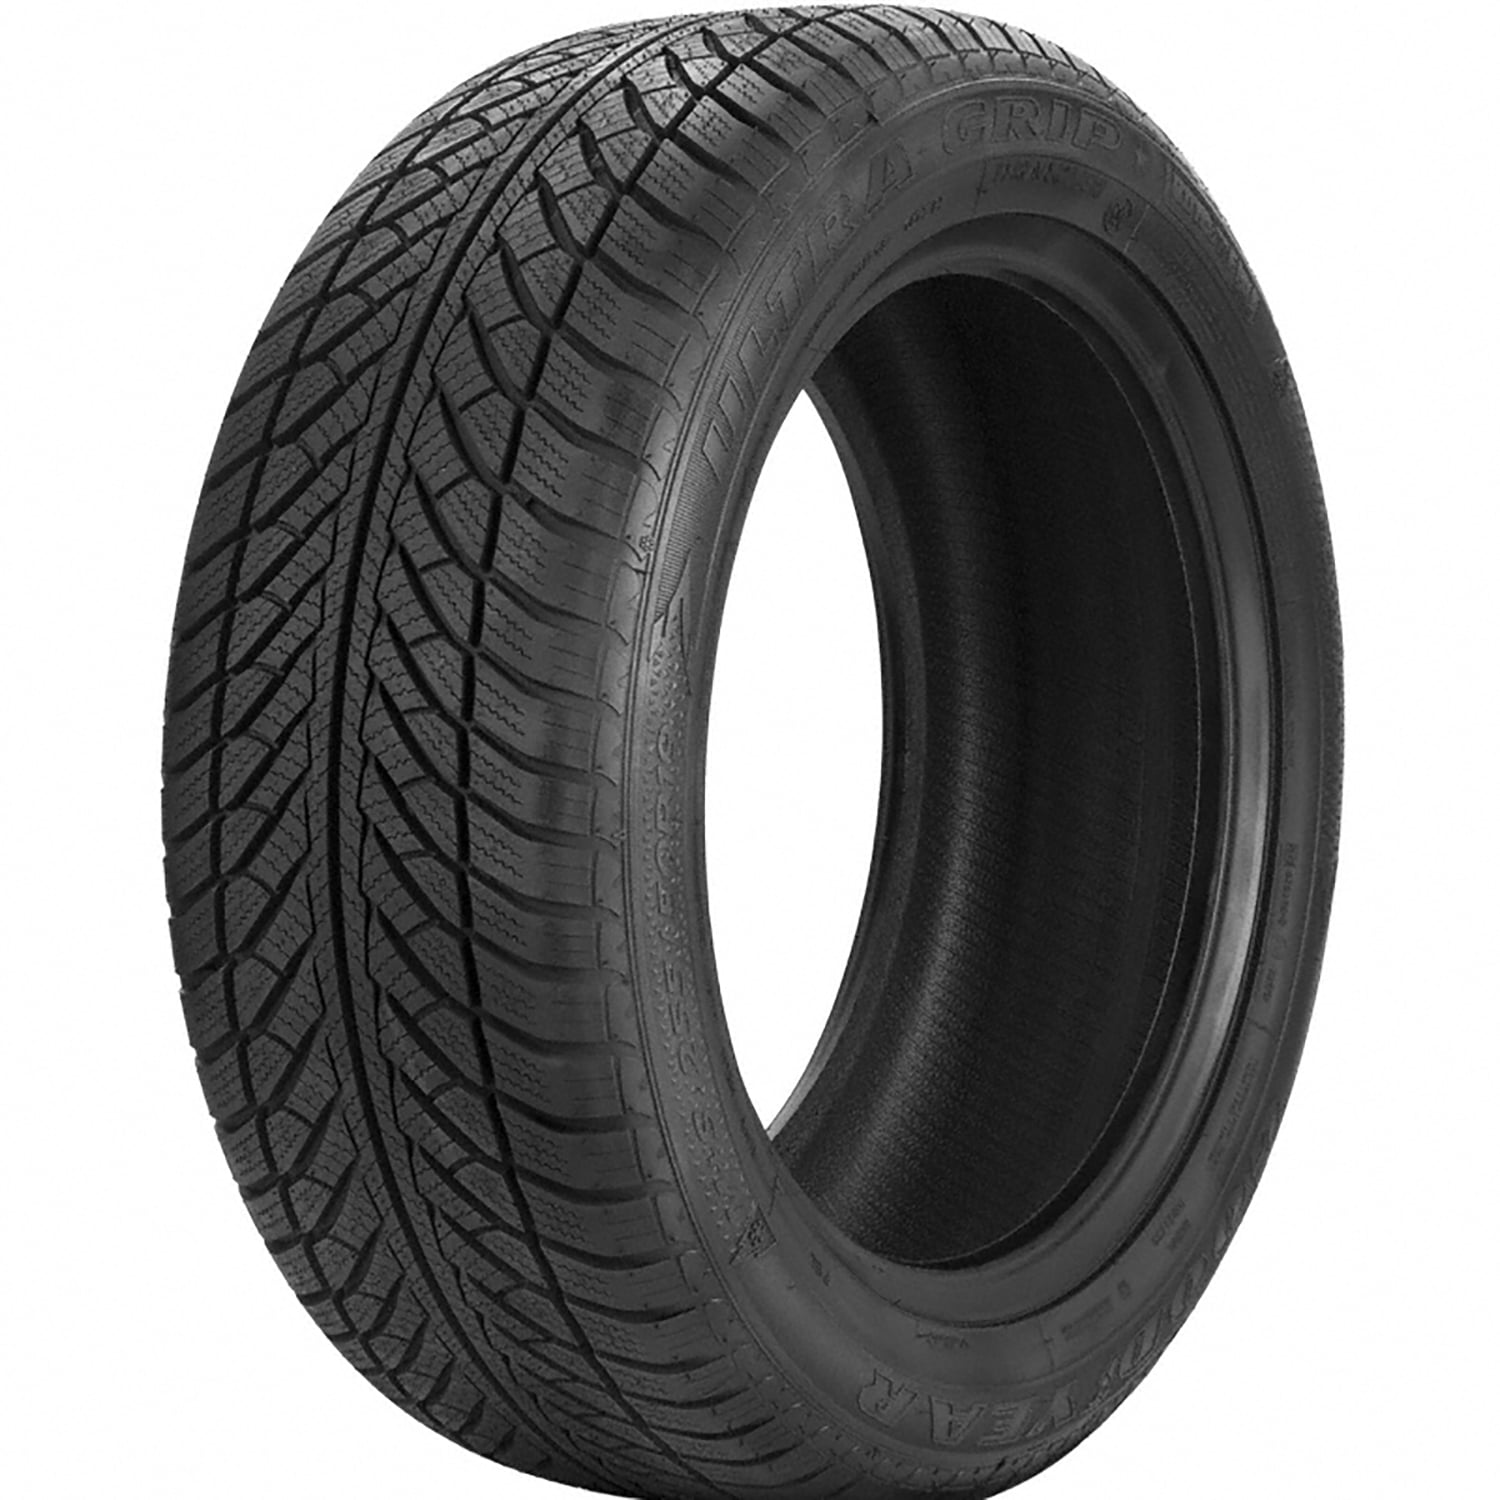 Goodyear Ultra Grip Winter 205/65R16 95H Passenger Tire